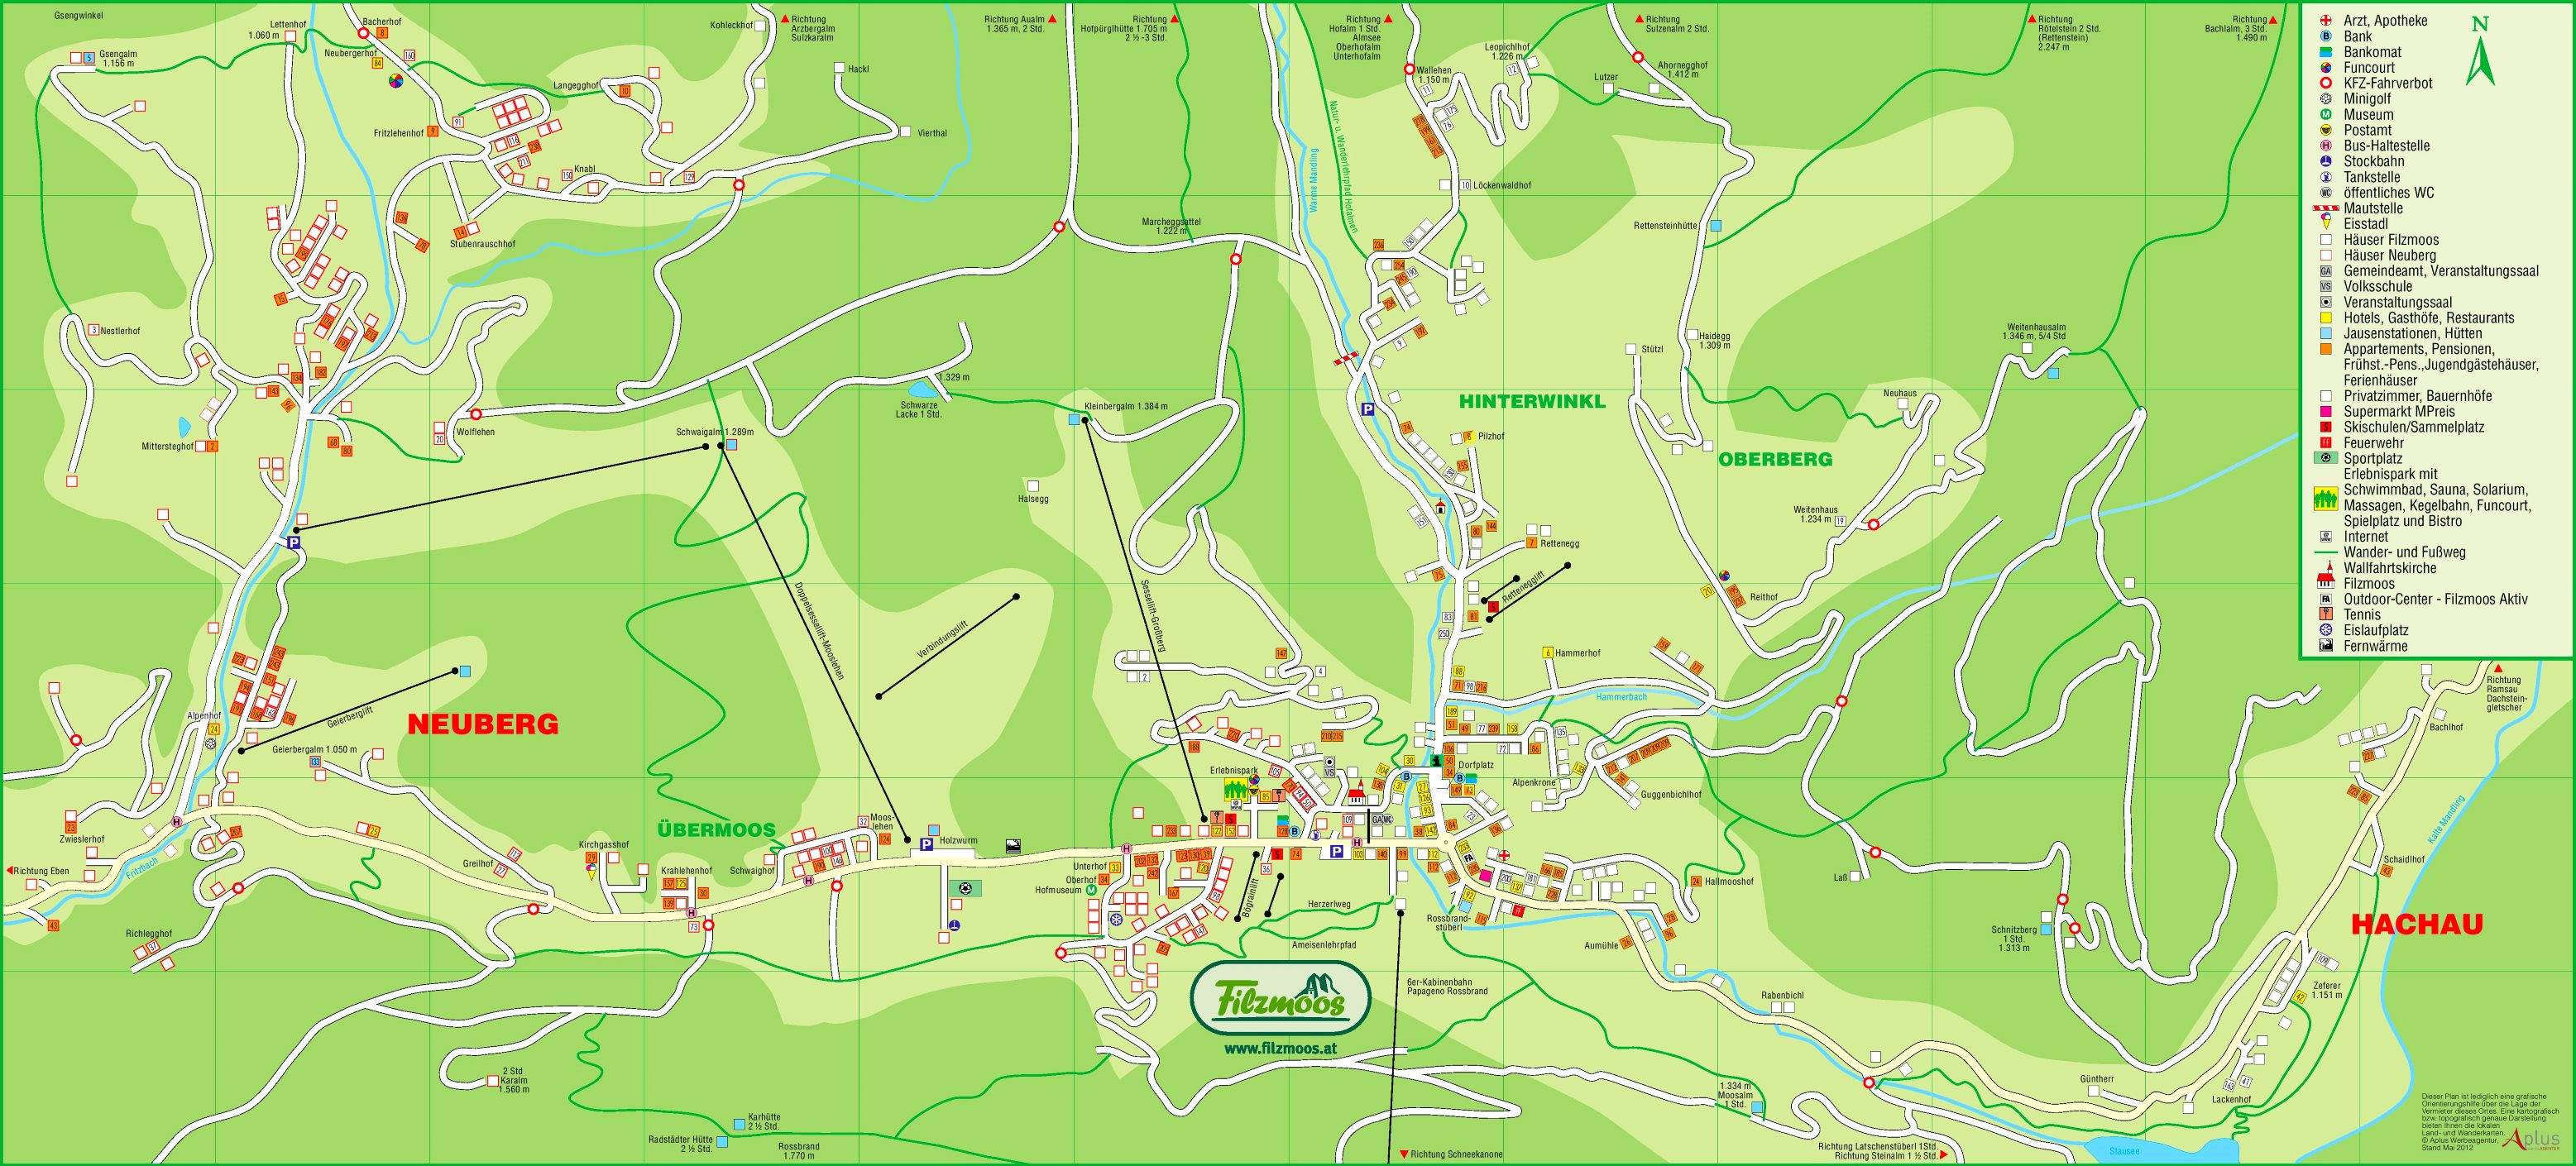 Filzmoos tourist map